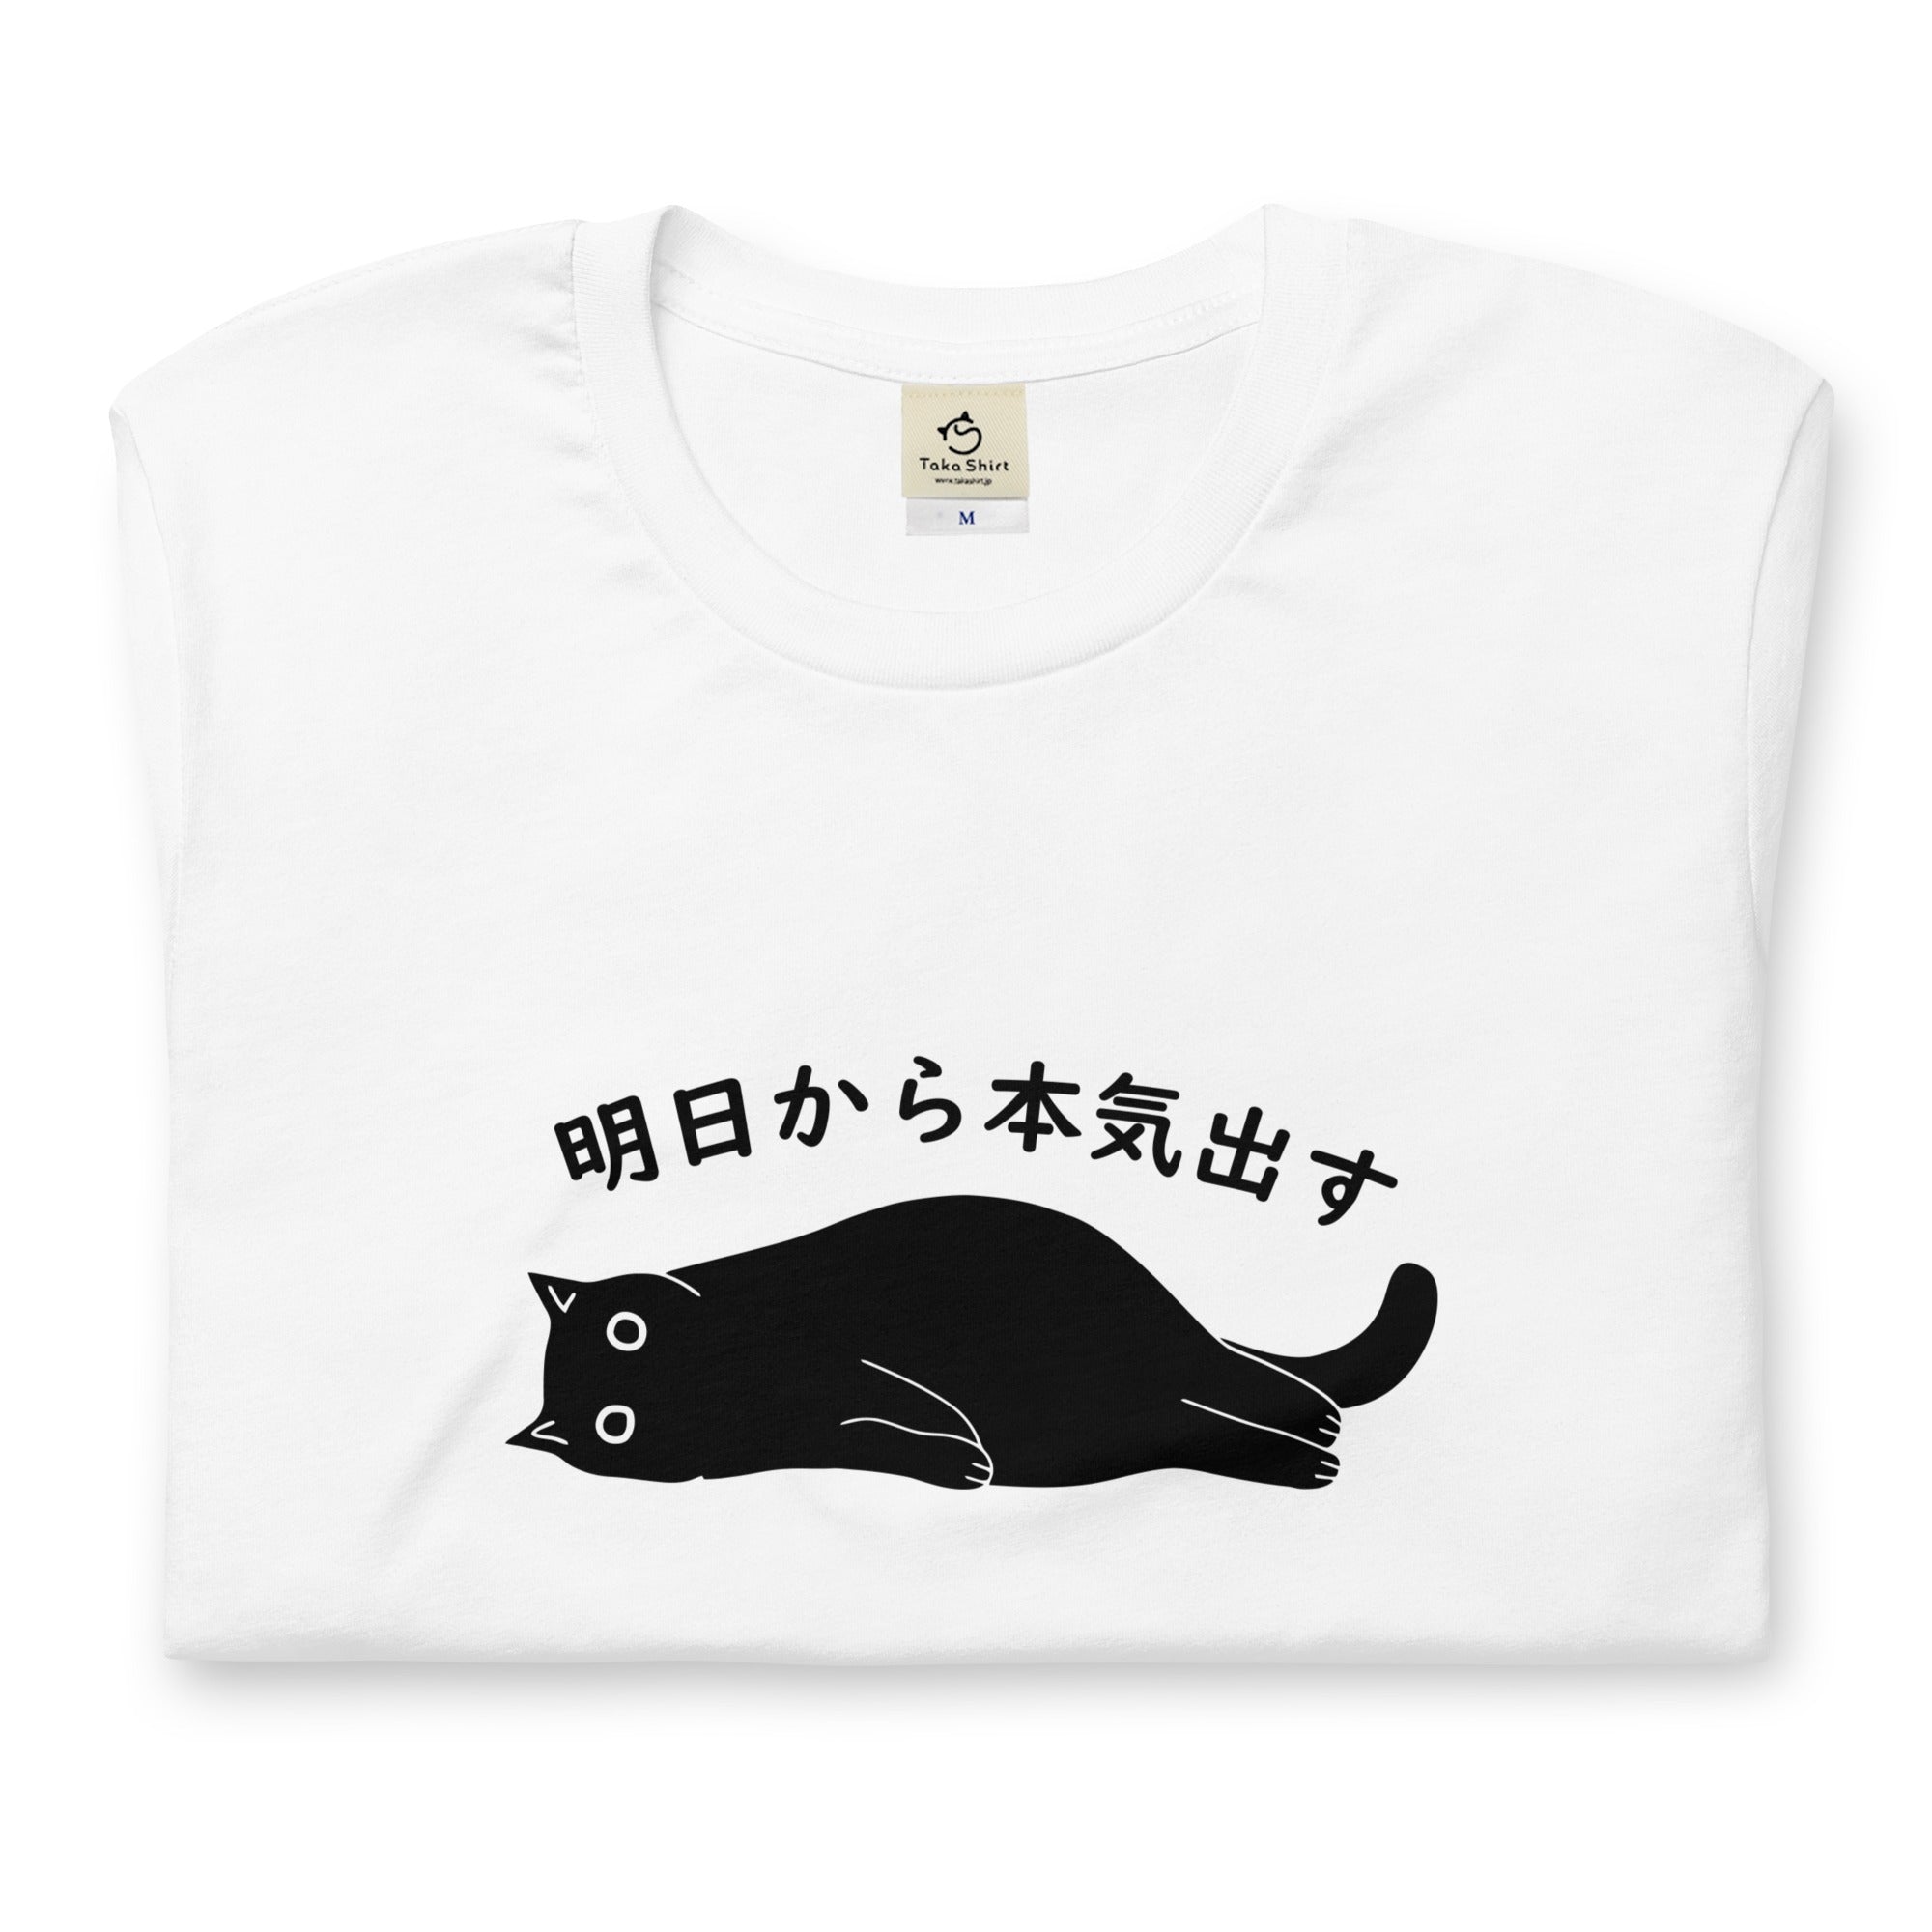 36,999円売り切れました☆ZARA☆後ろ猫Tシャツ